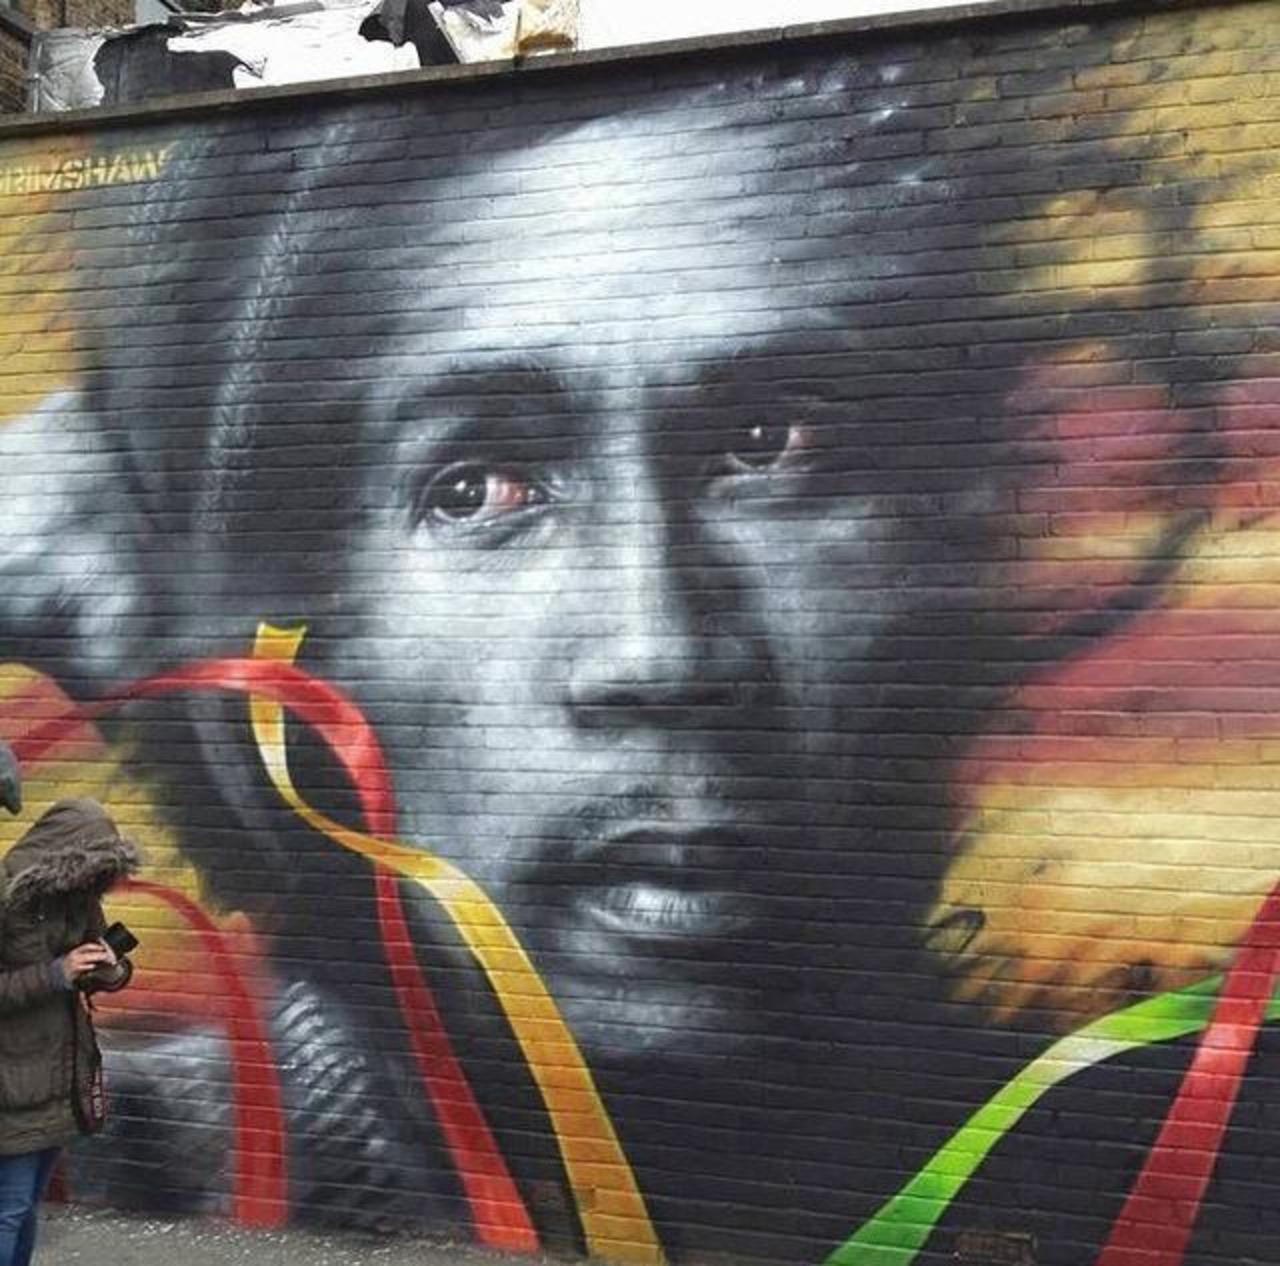 Bob Marley Street Art portrait by Dale Grimshaw in London 

#art #arte #graffiti #streetart http://t.co/D99pRWfNyF